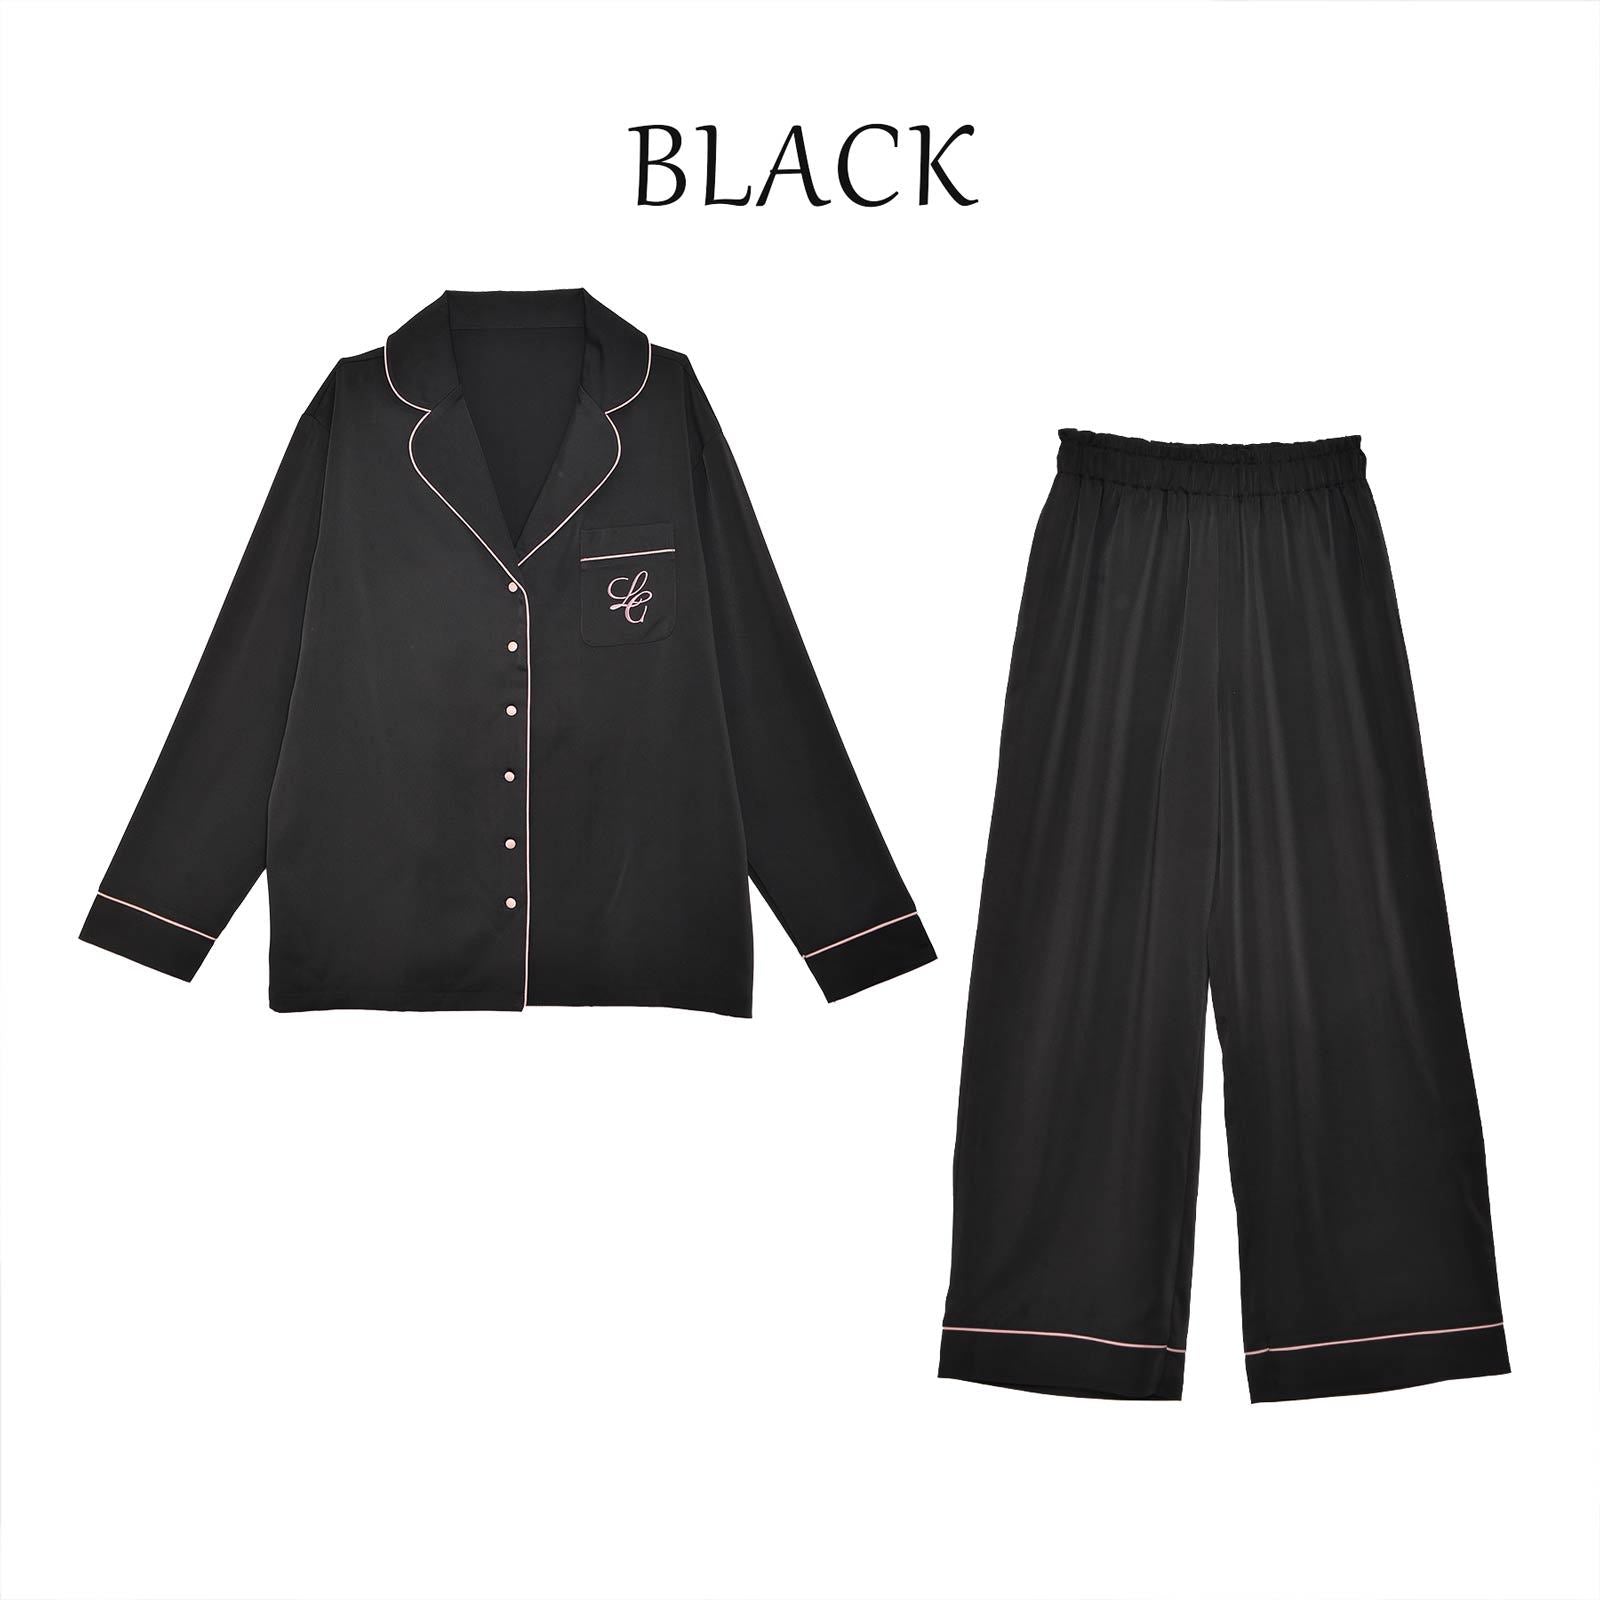 10/25新作!【lunangelina】Satin Frill Pajama/Black